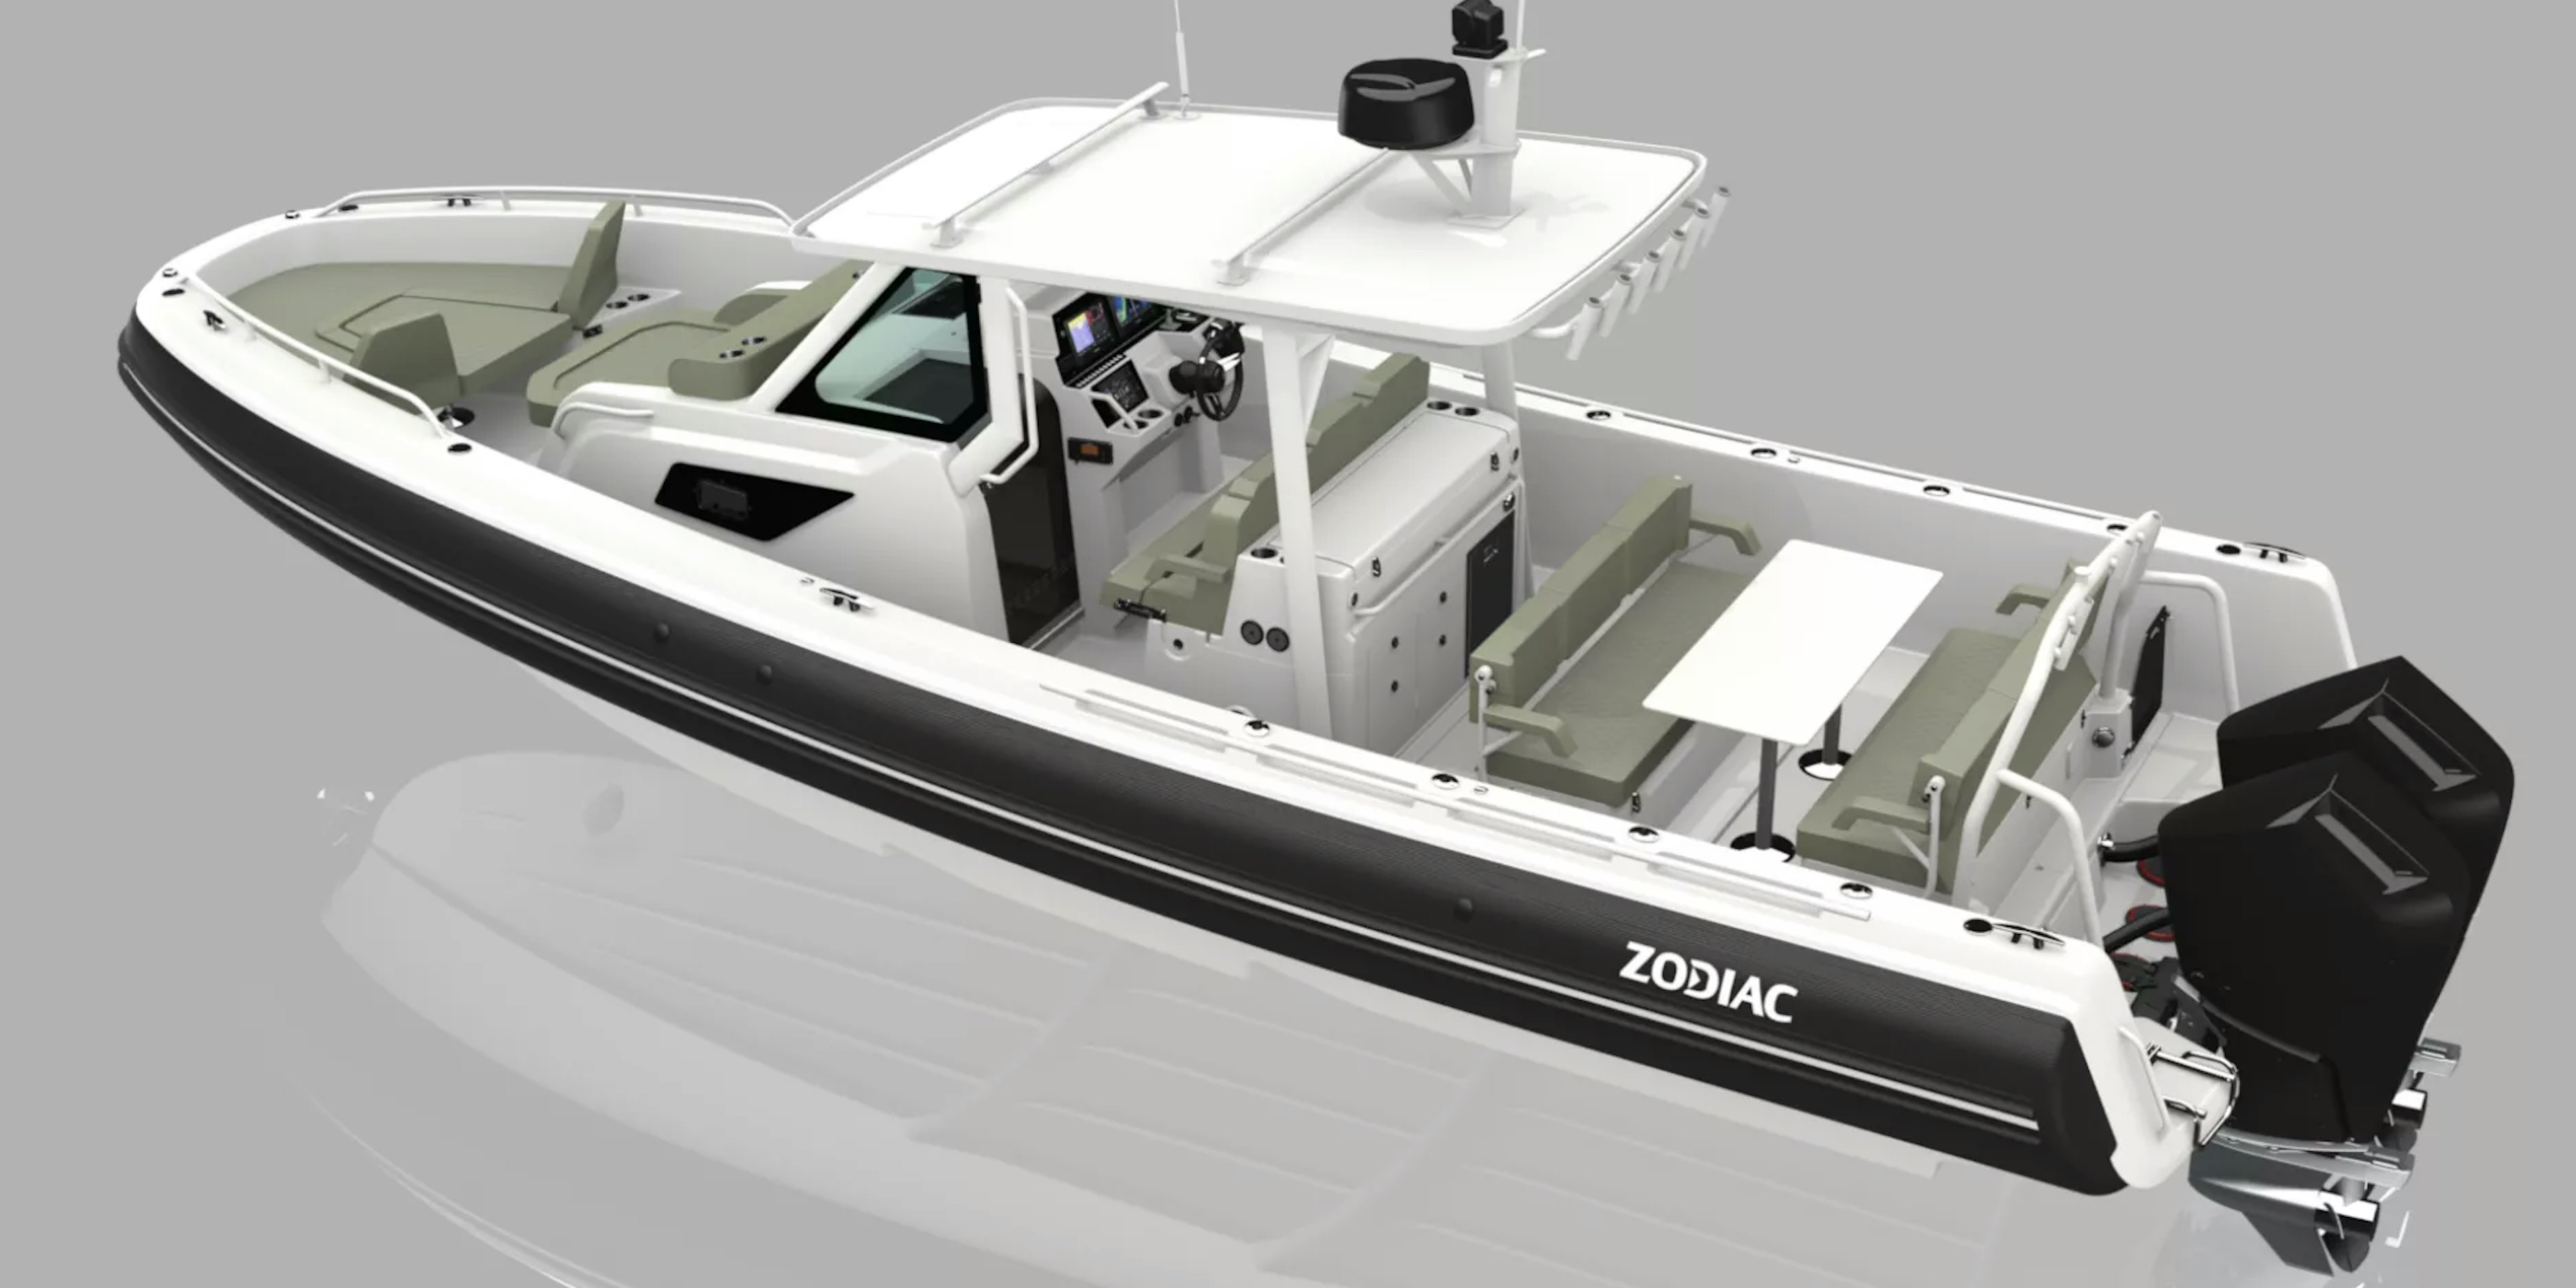 X10CC är den senaste nyheten från Zodiac och den största båt som den franska tillverkaren någonsin byggt.